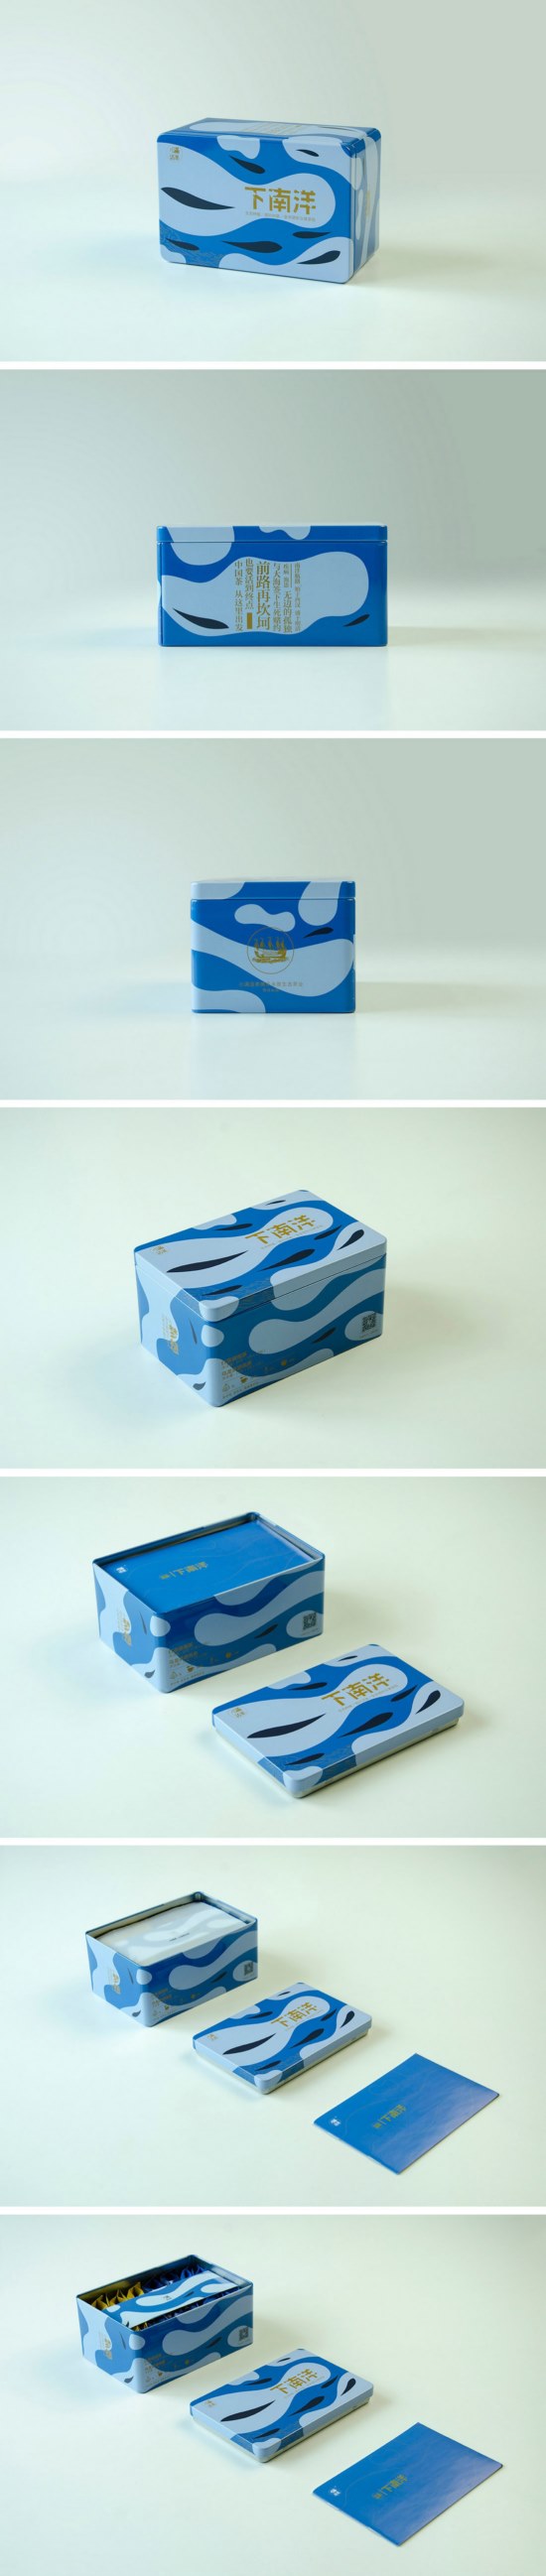 无线袋泡茶包装盒设计 